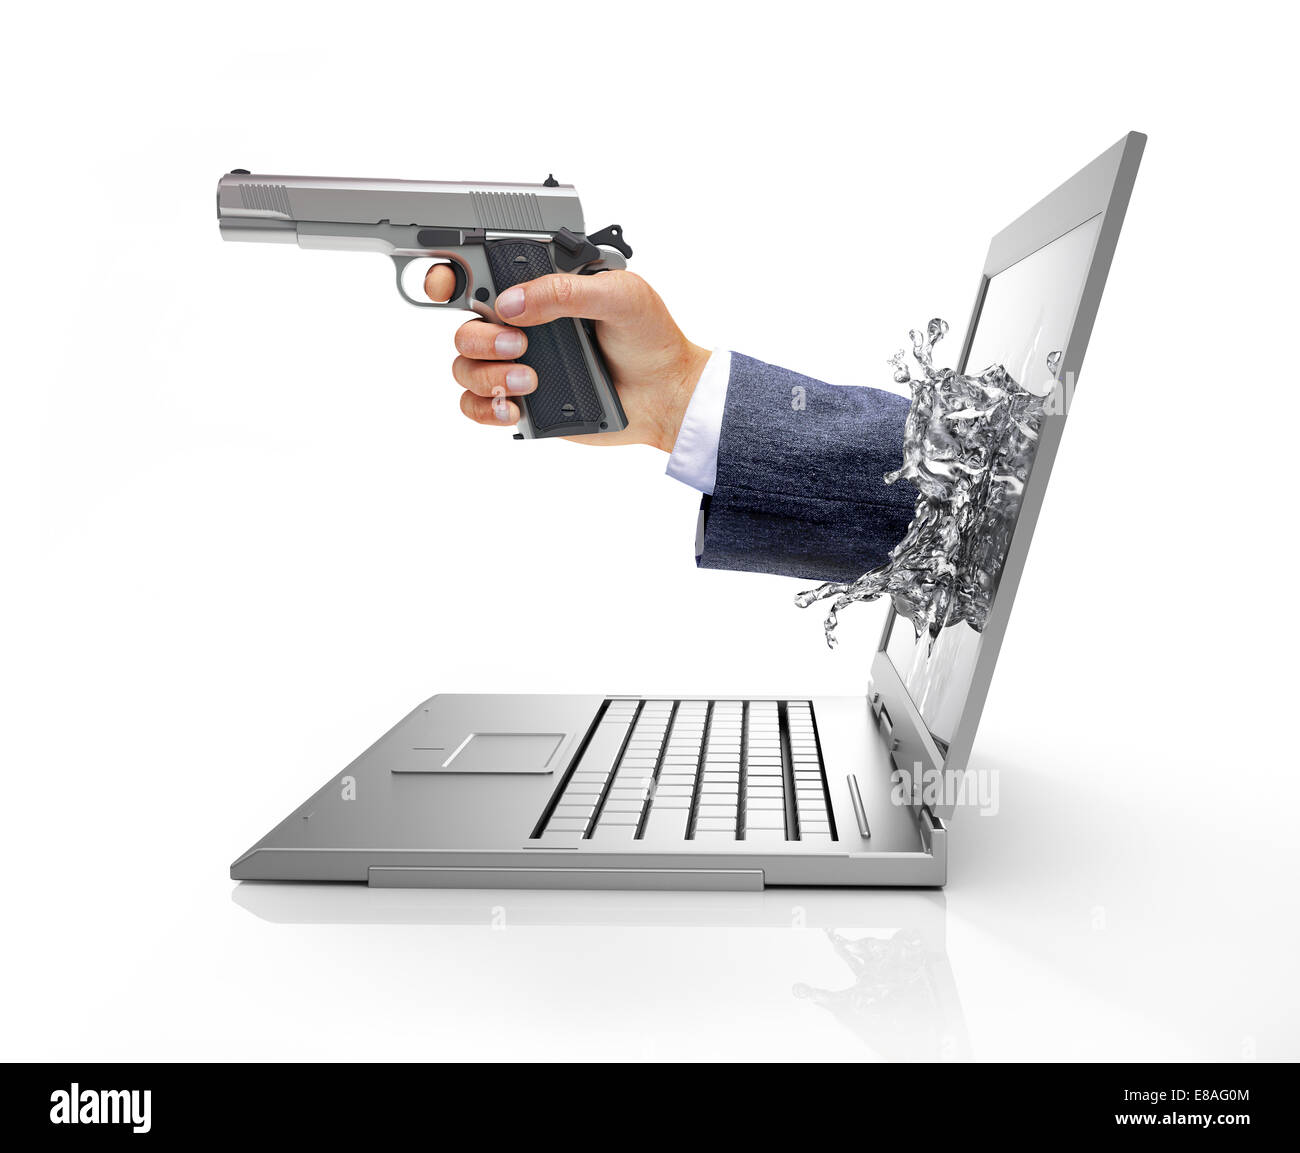 L'uomo le mani, proveniente da un computer allo schermo del laptop, formando una spruzzata da cristalli liquidi, tenendo in mano una pistola silver. Visto dal Foto Stock